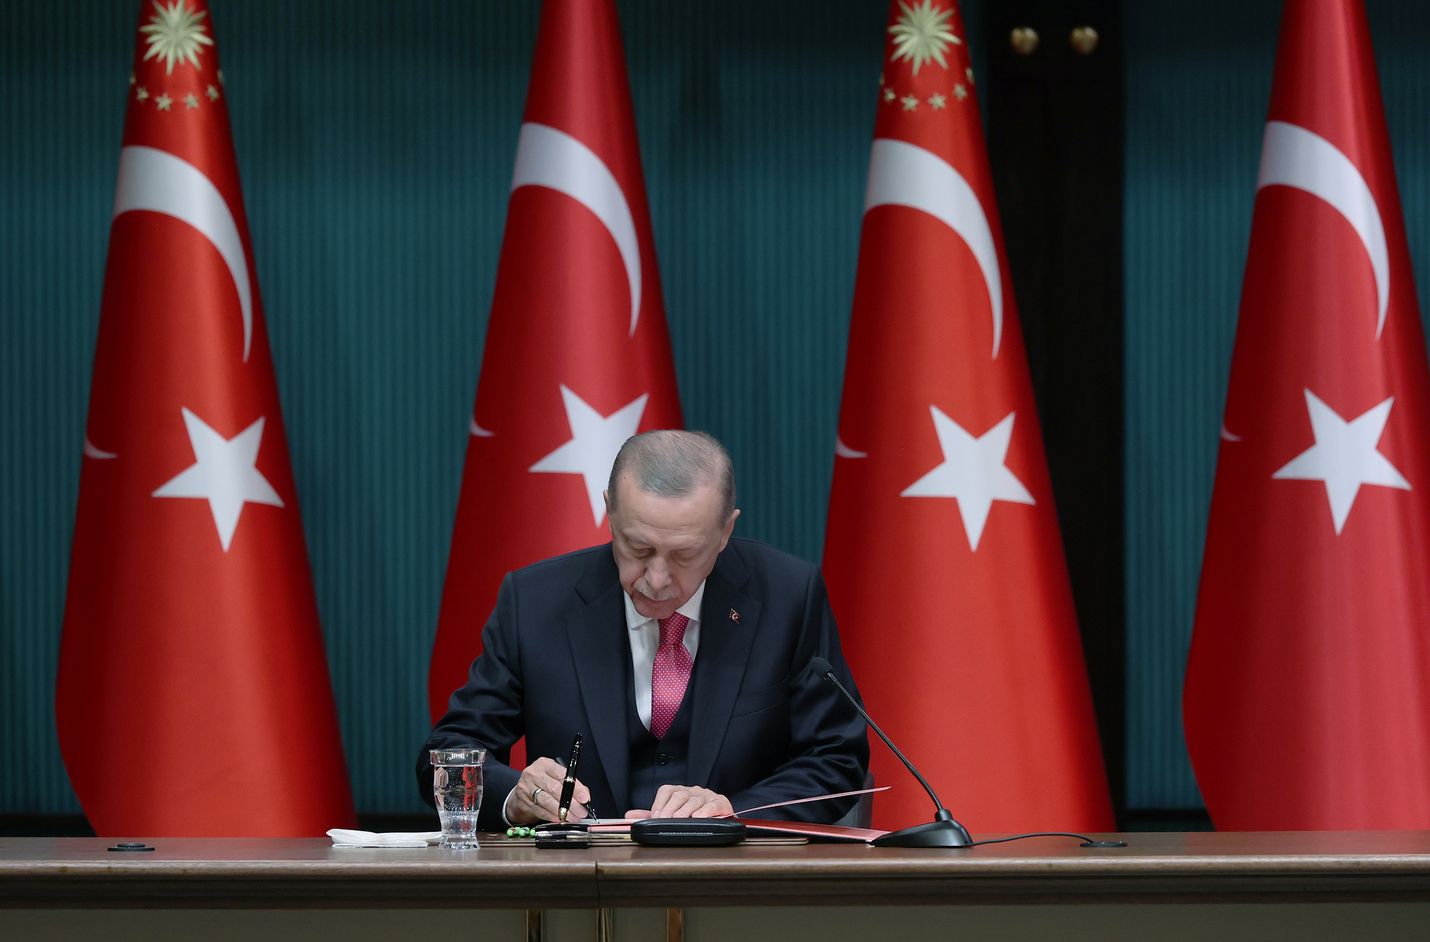 Turkin presidentti Recep Tayyip  Erdoğan saattaa olla valmis luopumaan vastustuksestaan Suomen Nato-jäsenyydelle vielä ennen maan toukokuisia vaaleja. Kuvassa  Erdoğan allekirjoittaa määräystä maansa presidentinvaalien ajankohdasta, joksi tuli 14. toukokuuta.